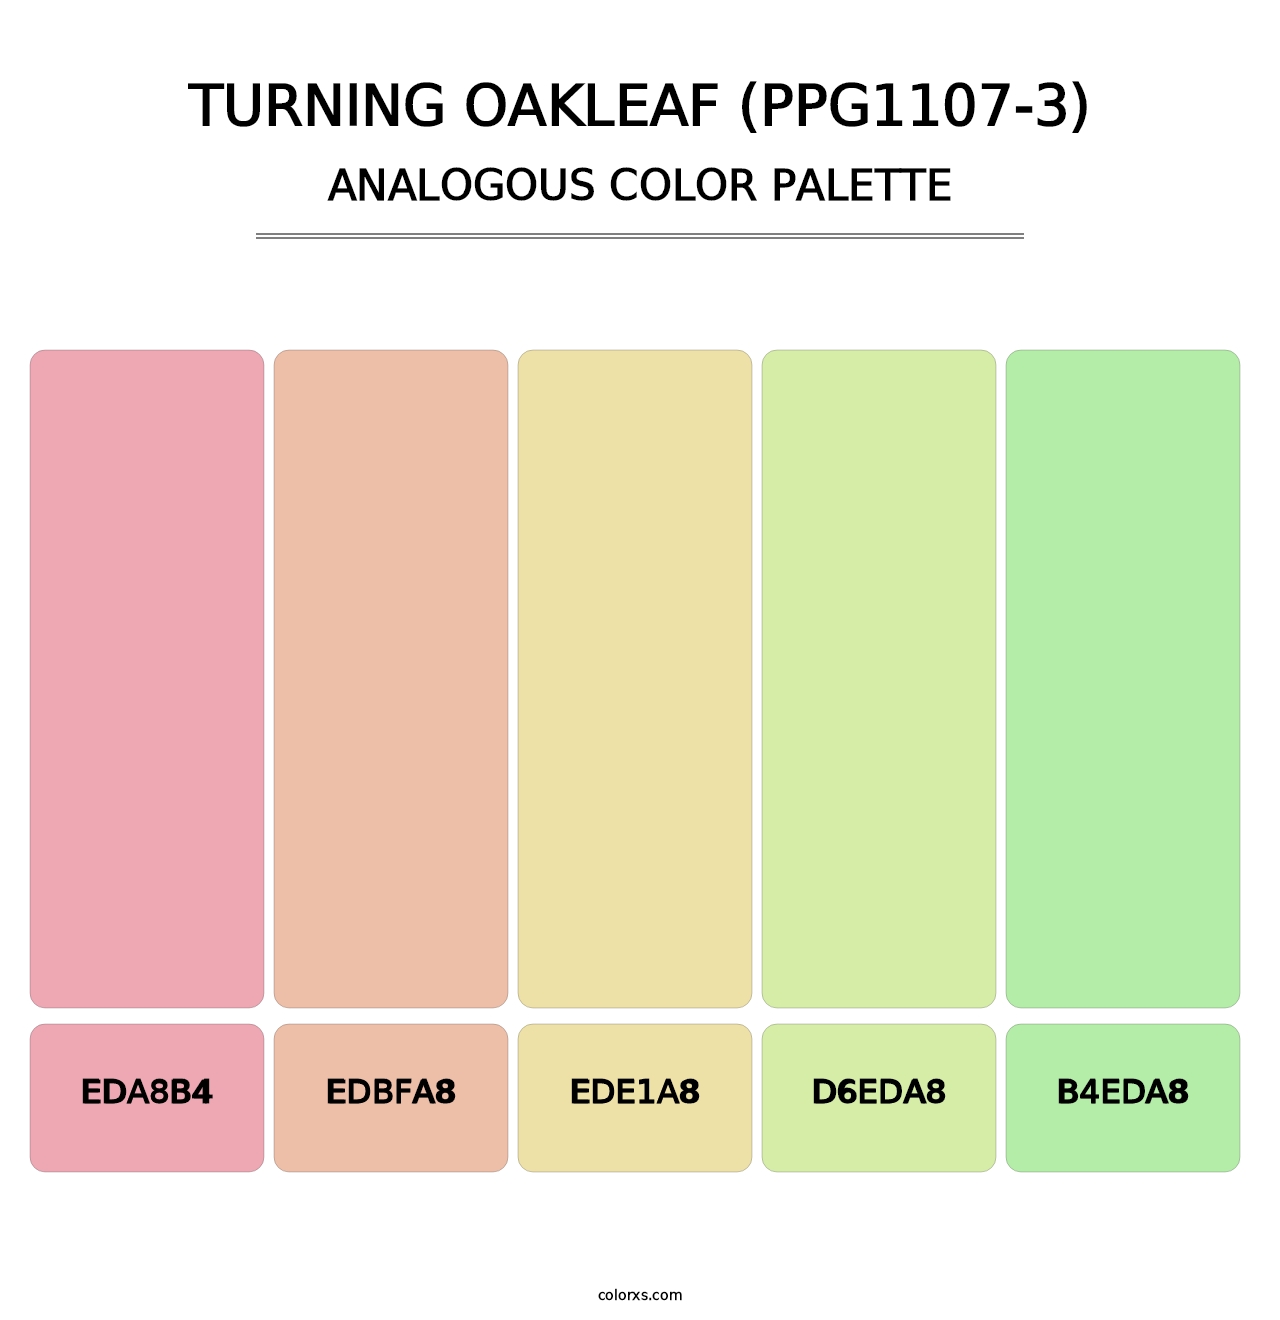 Turning Oakleaf (PPG1107-3) - Analogous Color Palette